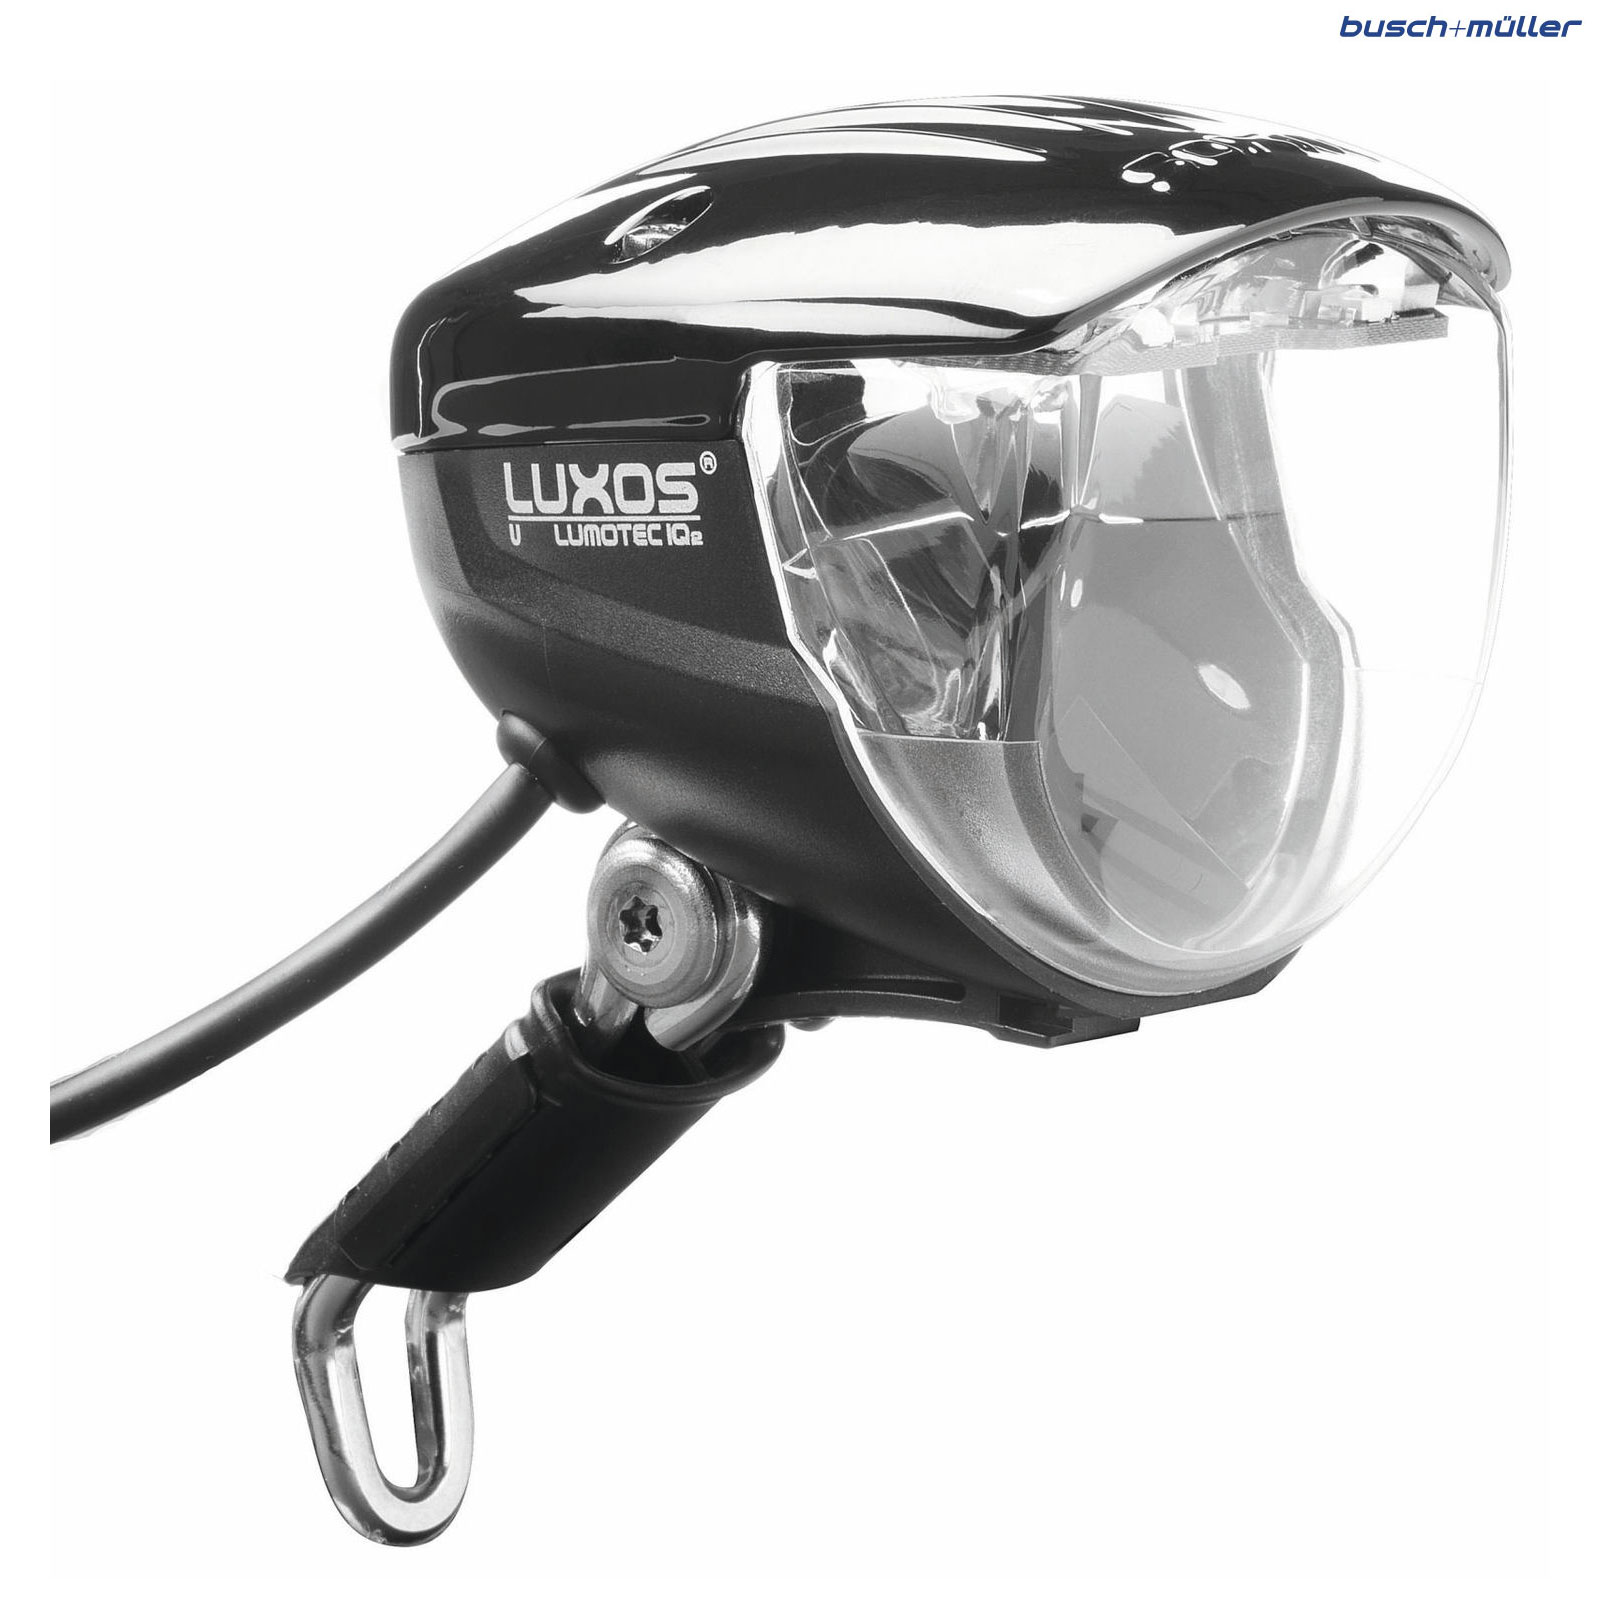 Vermelding micro Ieder Busch & Muller Lumotec IQ2 Luxos U Headlight